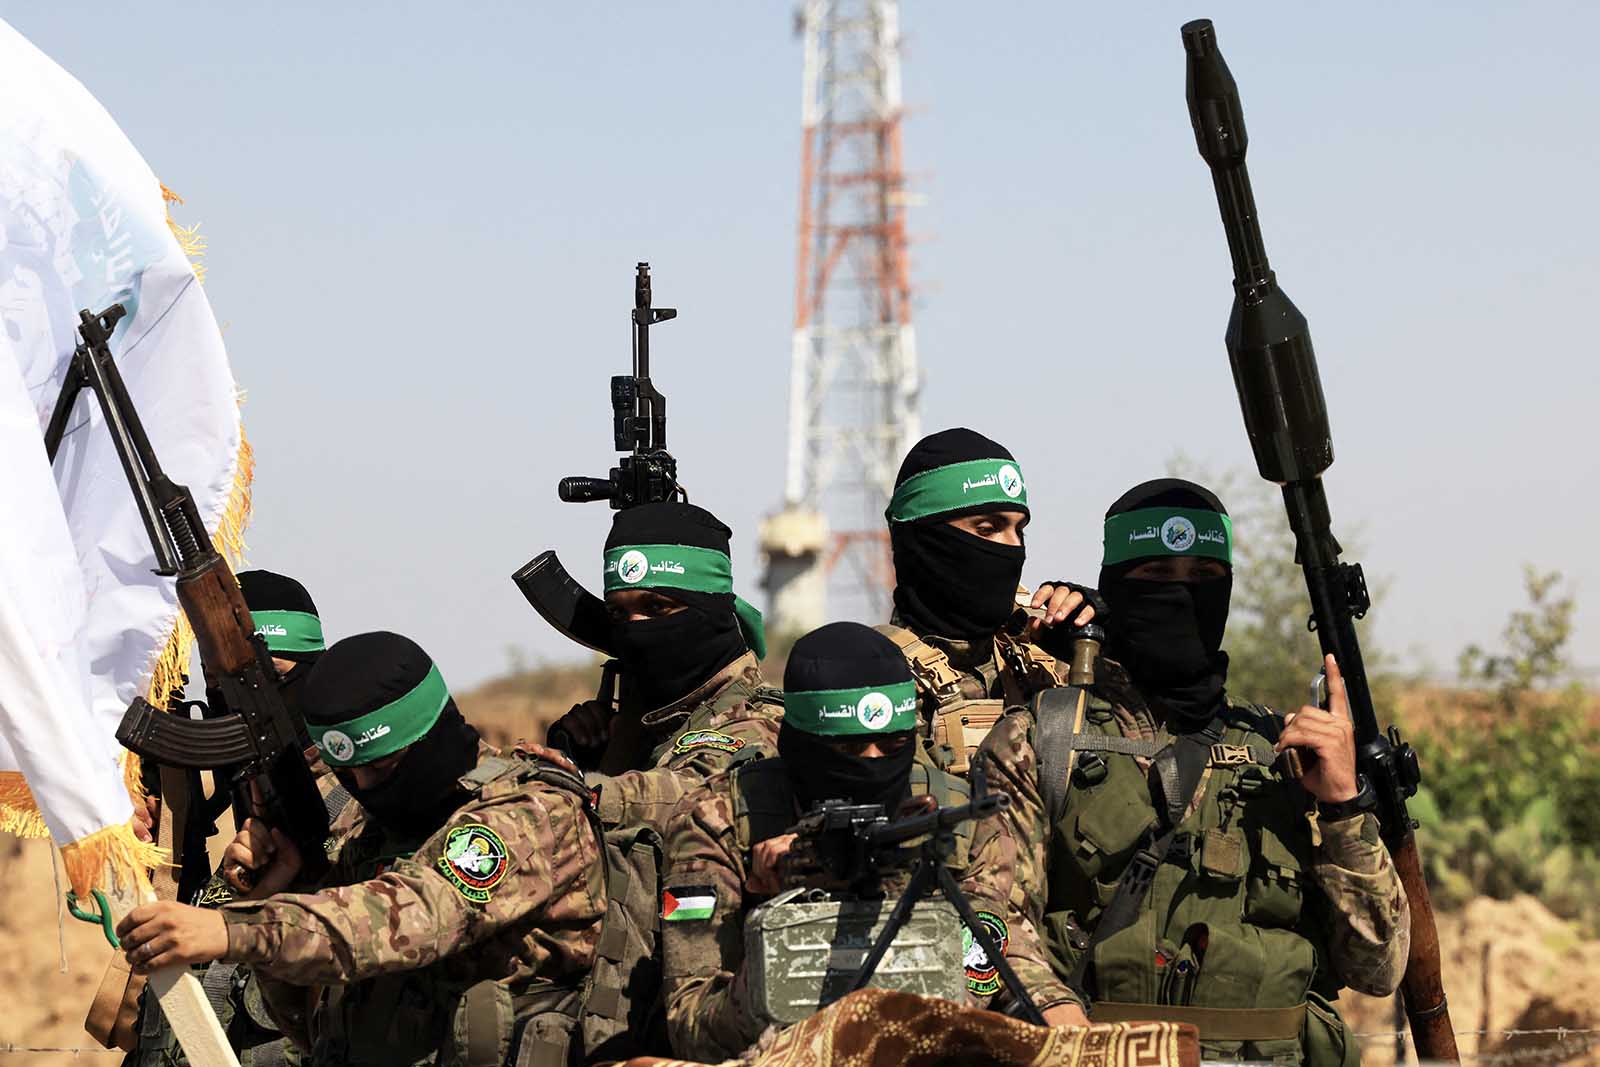 Comment Israël a joué les apprentis sorciers avec le Hamas - POLITIS